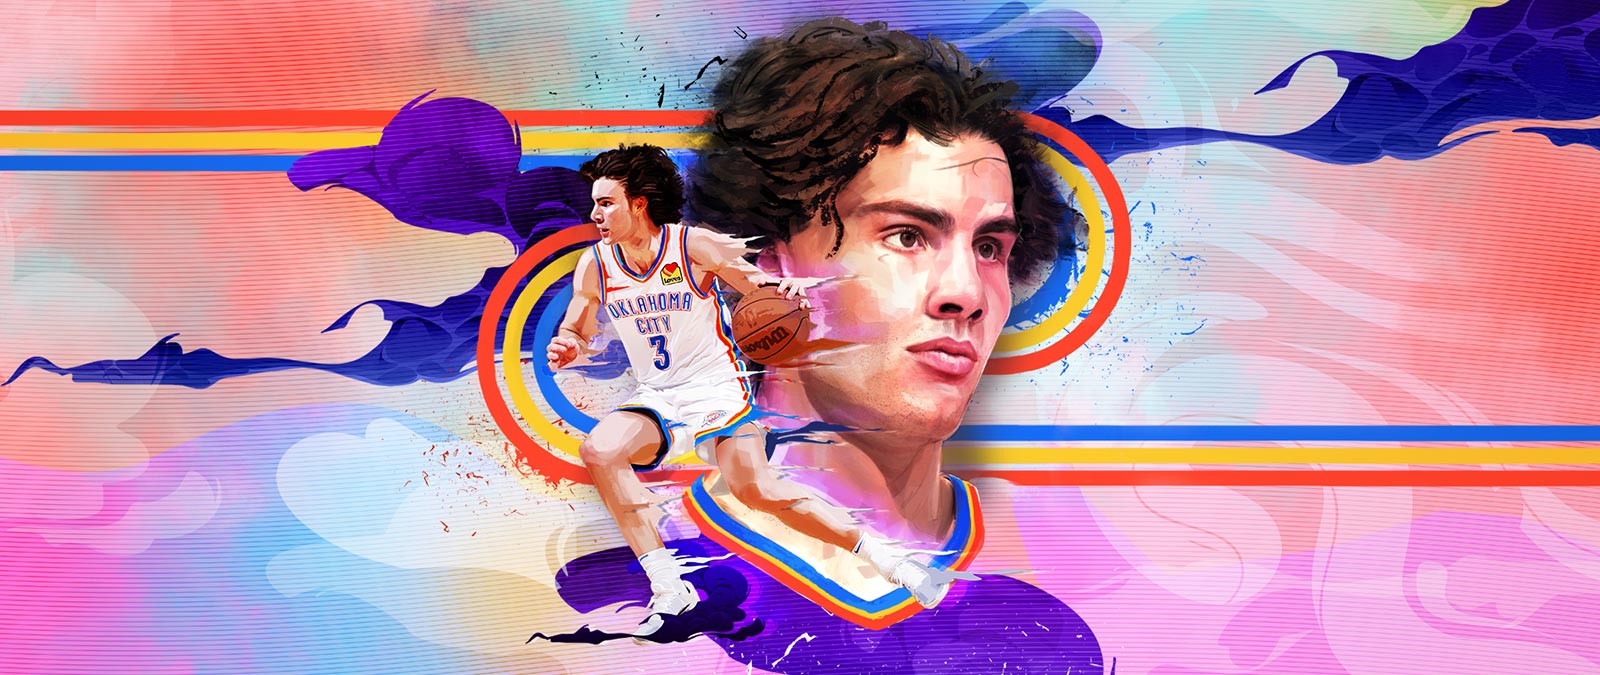 Images du joueur d’Oklahoma City Josh Giddey, dont son portrait et en action dribblant la balle, entouré de motifs géométriques colorés.